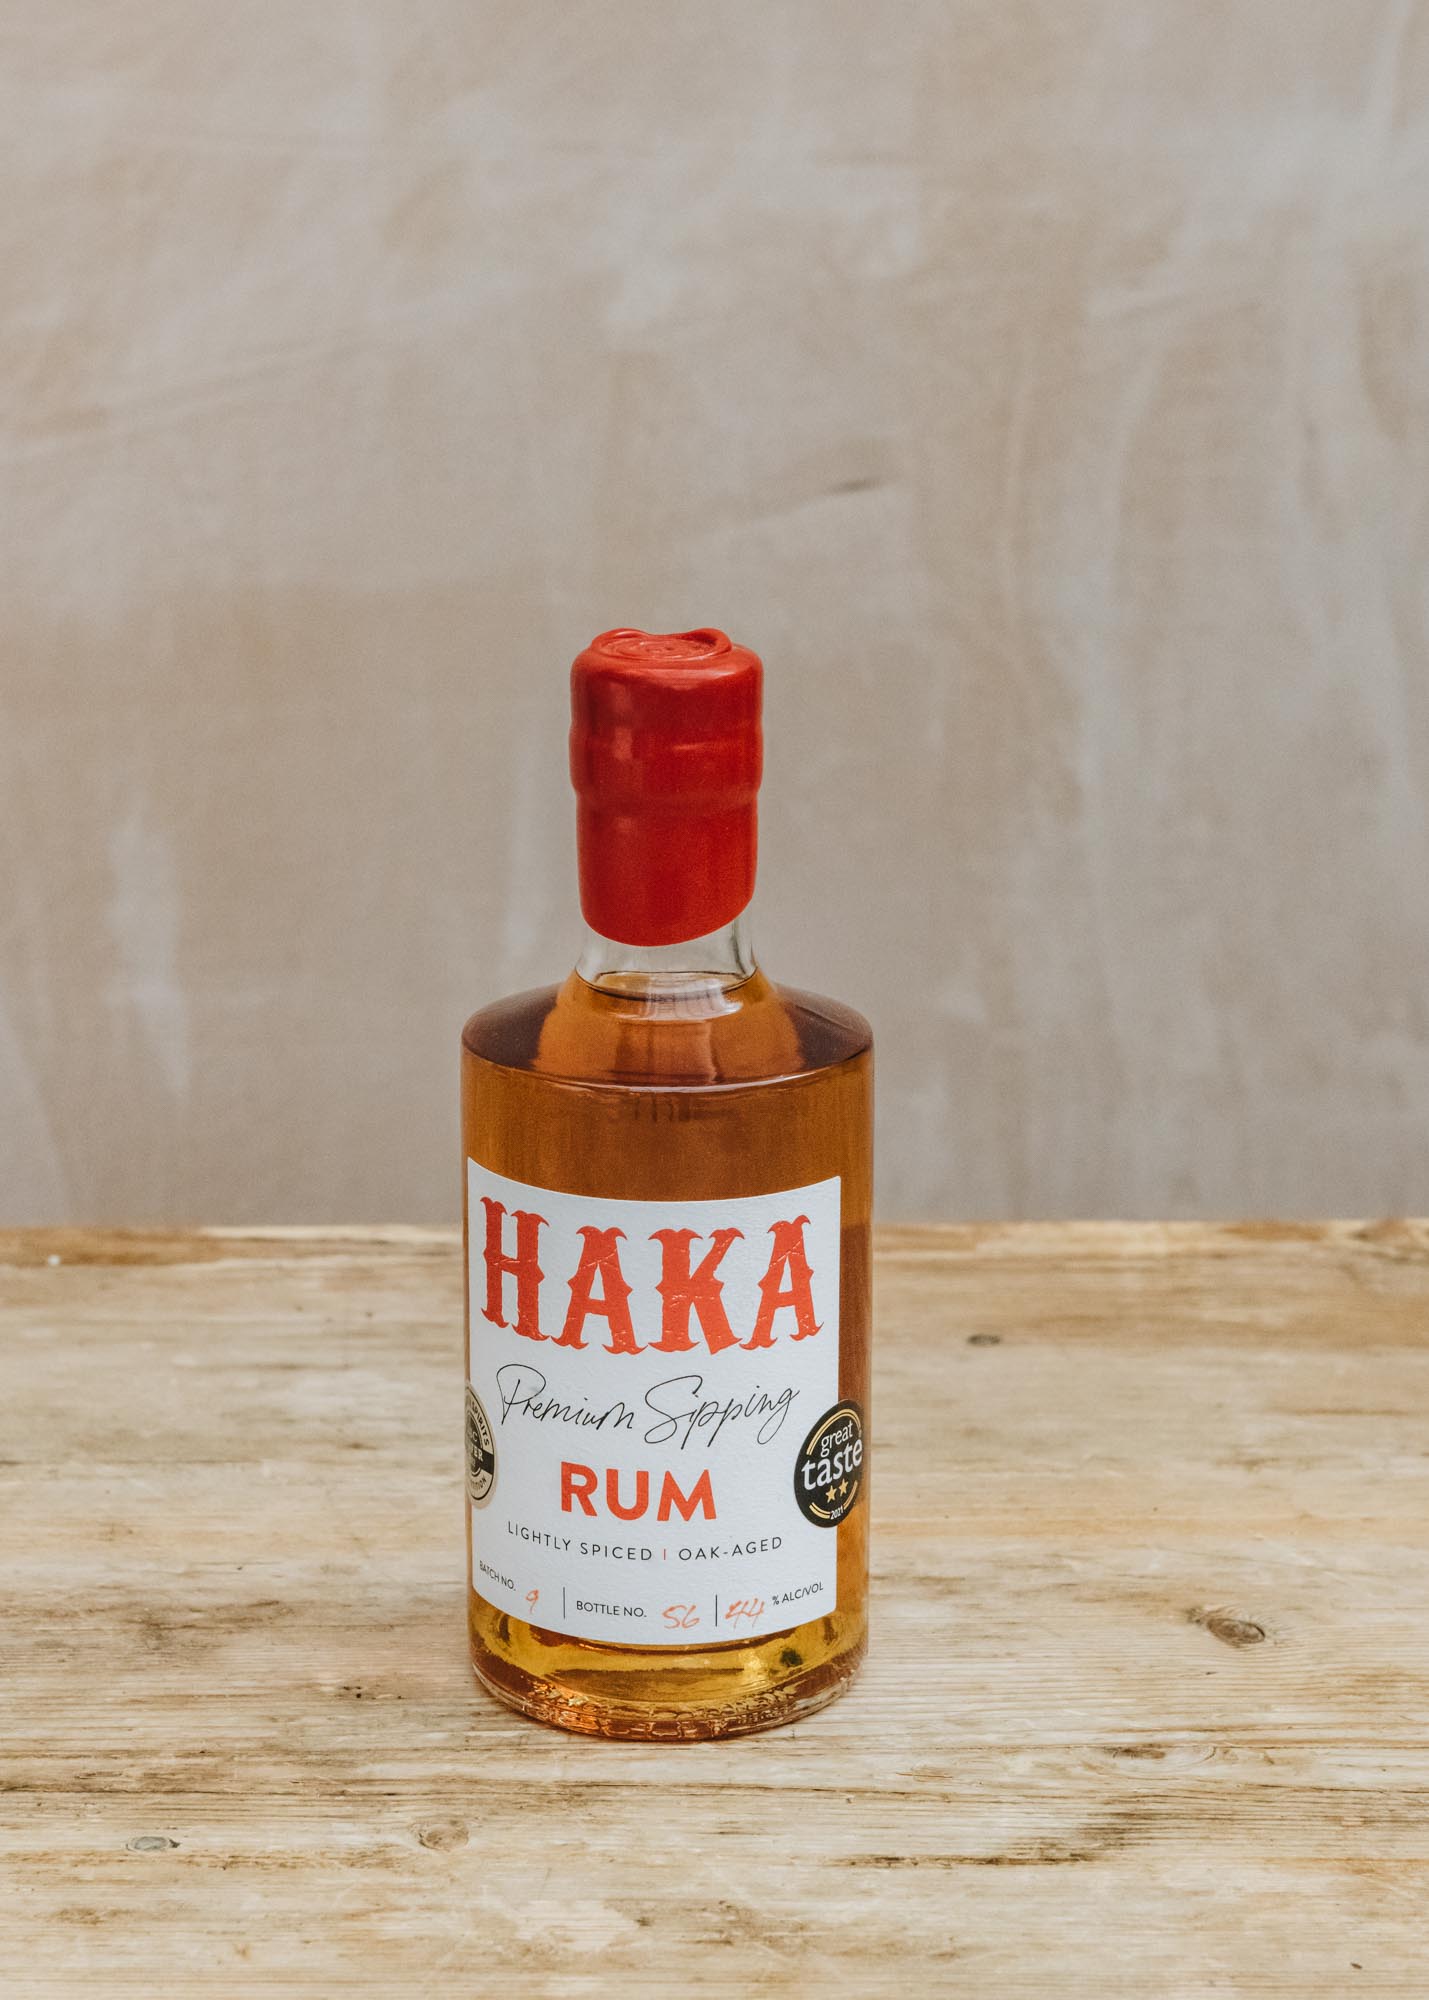 Haka Premium Sipping Rum